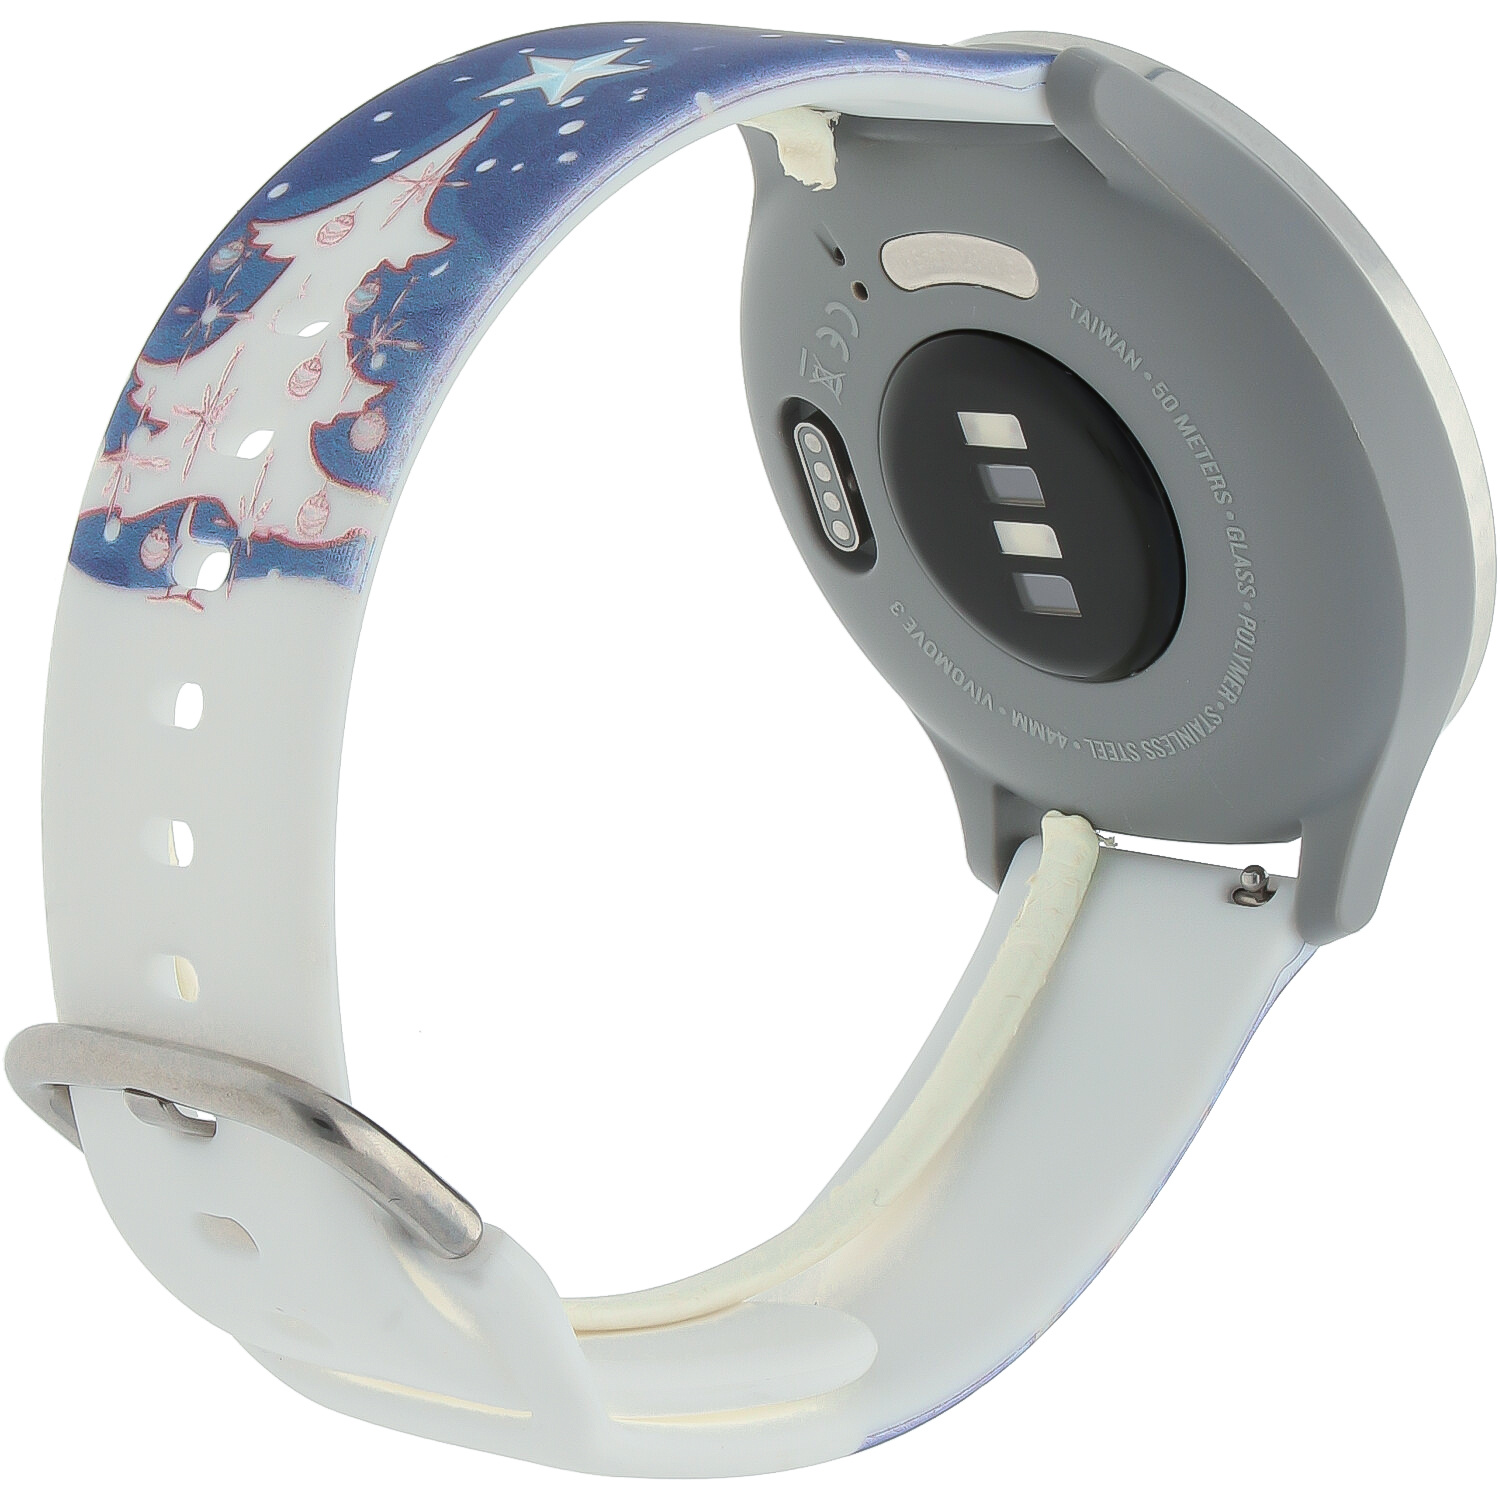 Samsung Galaxy Watch druck Sportarmband - Weihnachten Schneemann dunkelblau